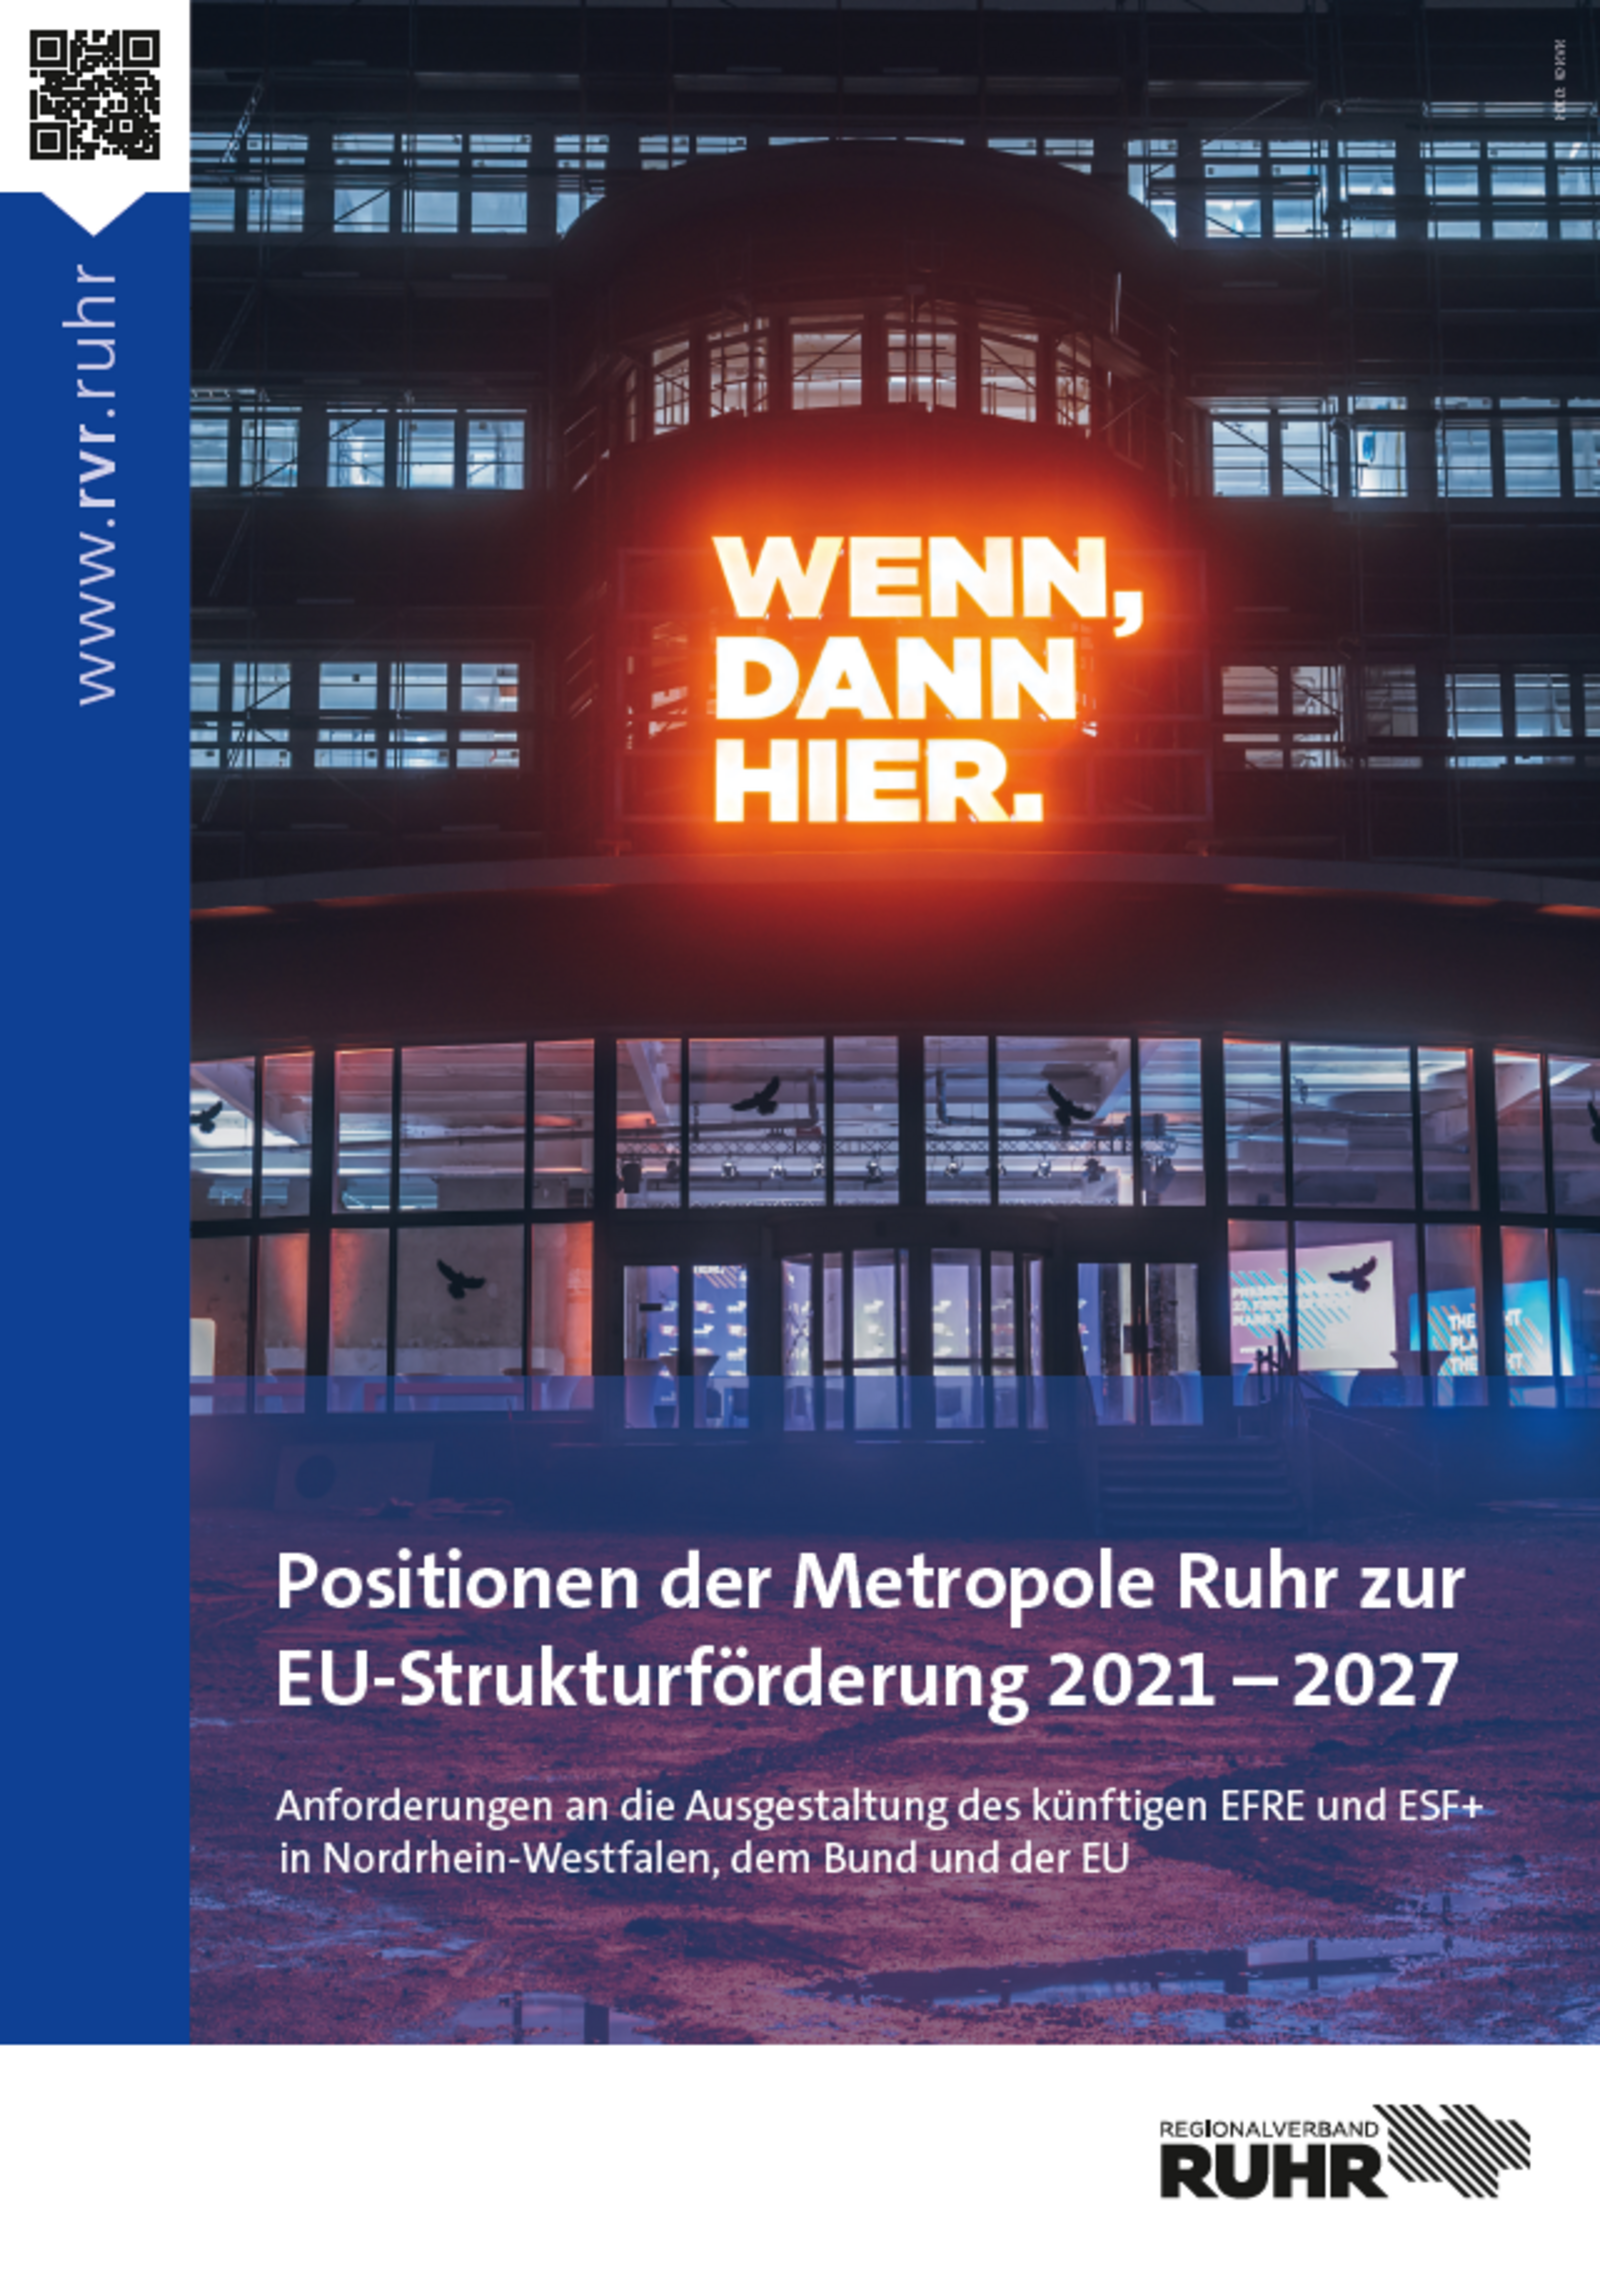 Download: Positionen der Metropole Ruhr zur EU-Strukturförderung 2021-2027 (PDF)